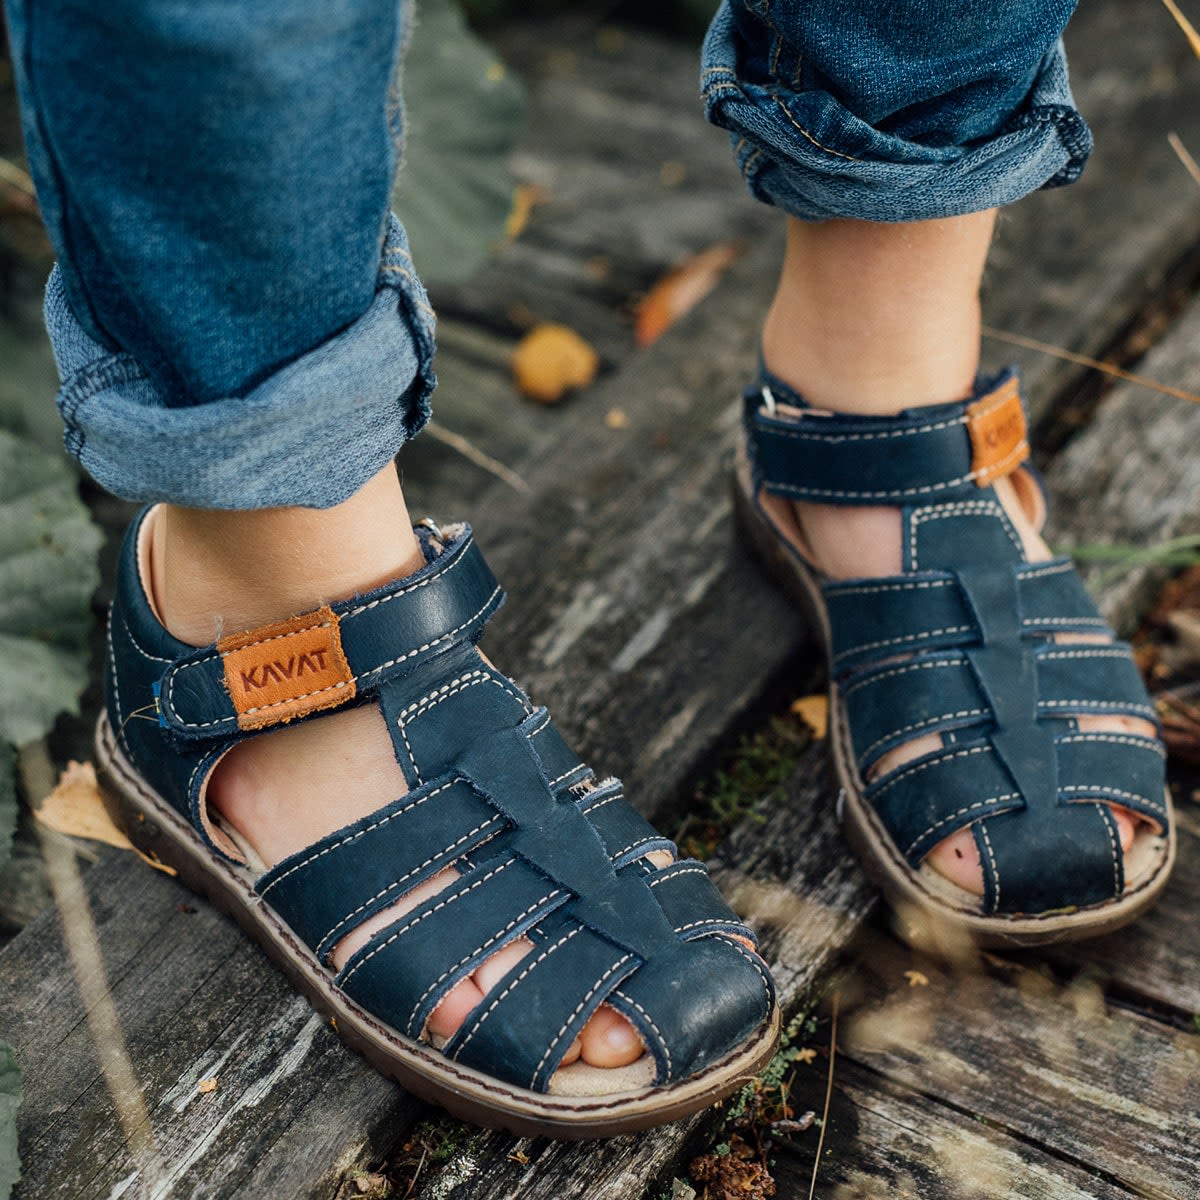 Sandals from Kavat - Babyshop